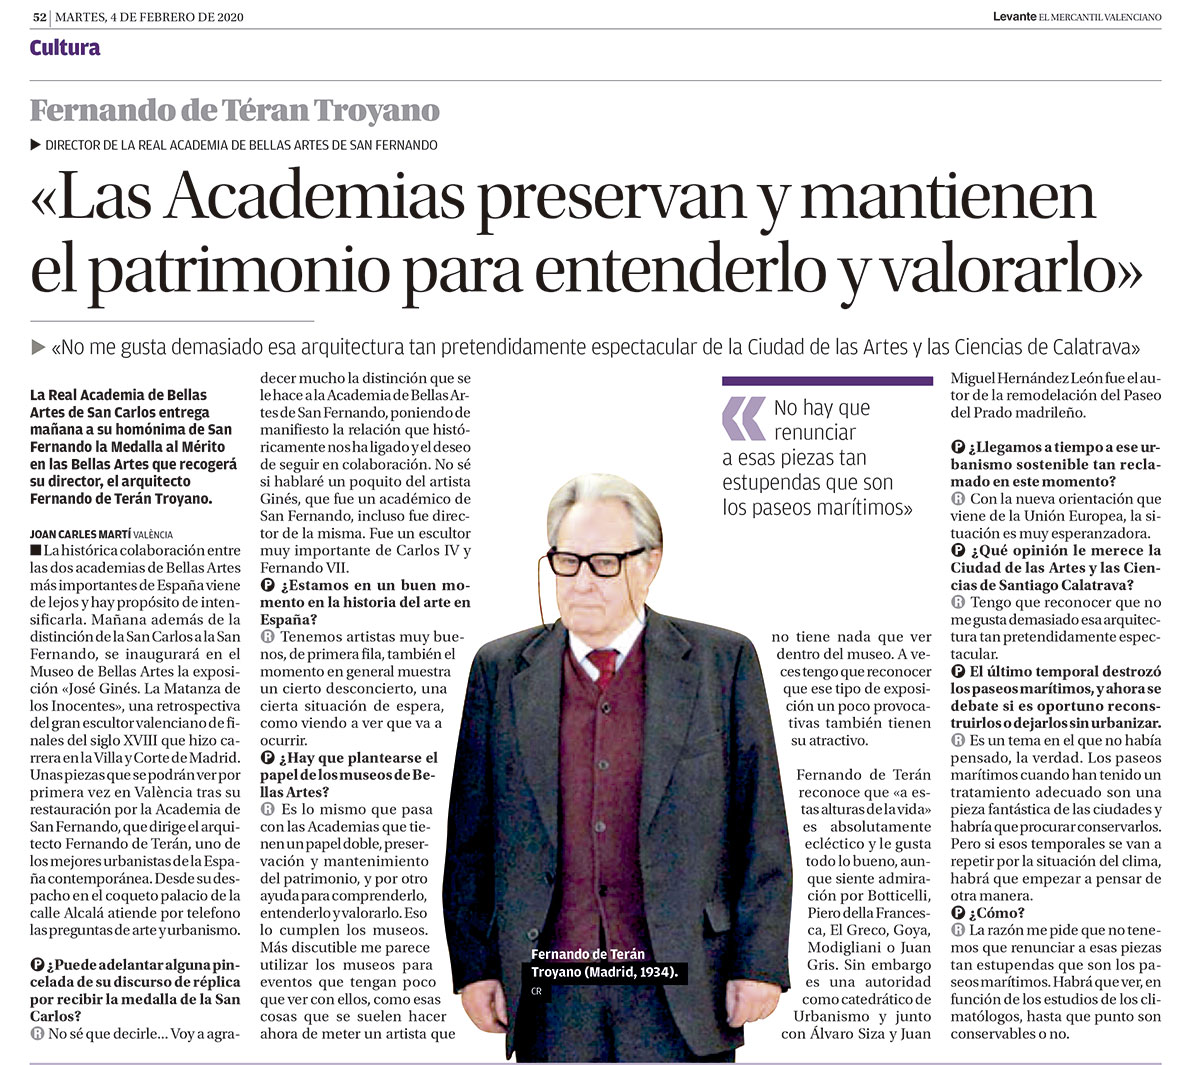 Fernando de Terán Troyano: "La Academias preservan y mantienen el patrimonio para entenderlo y valorarlo"